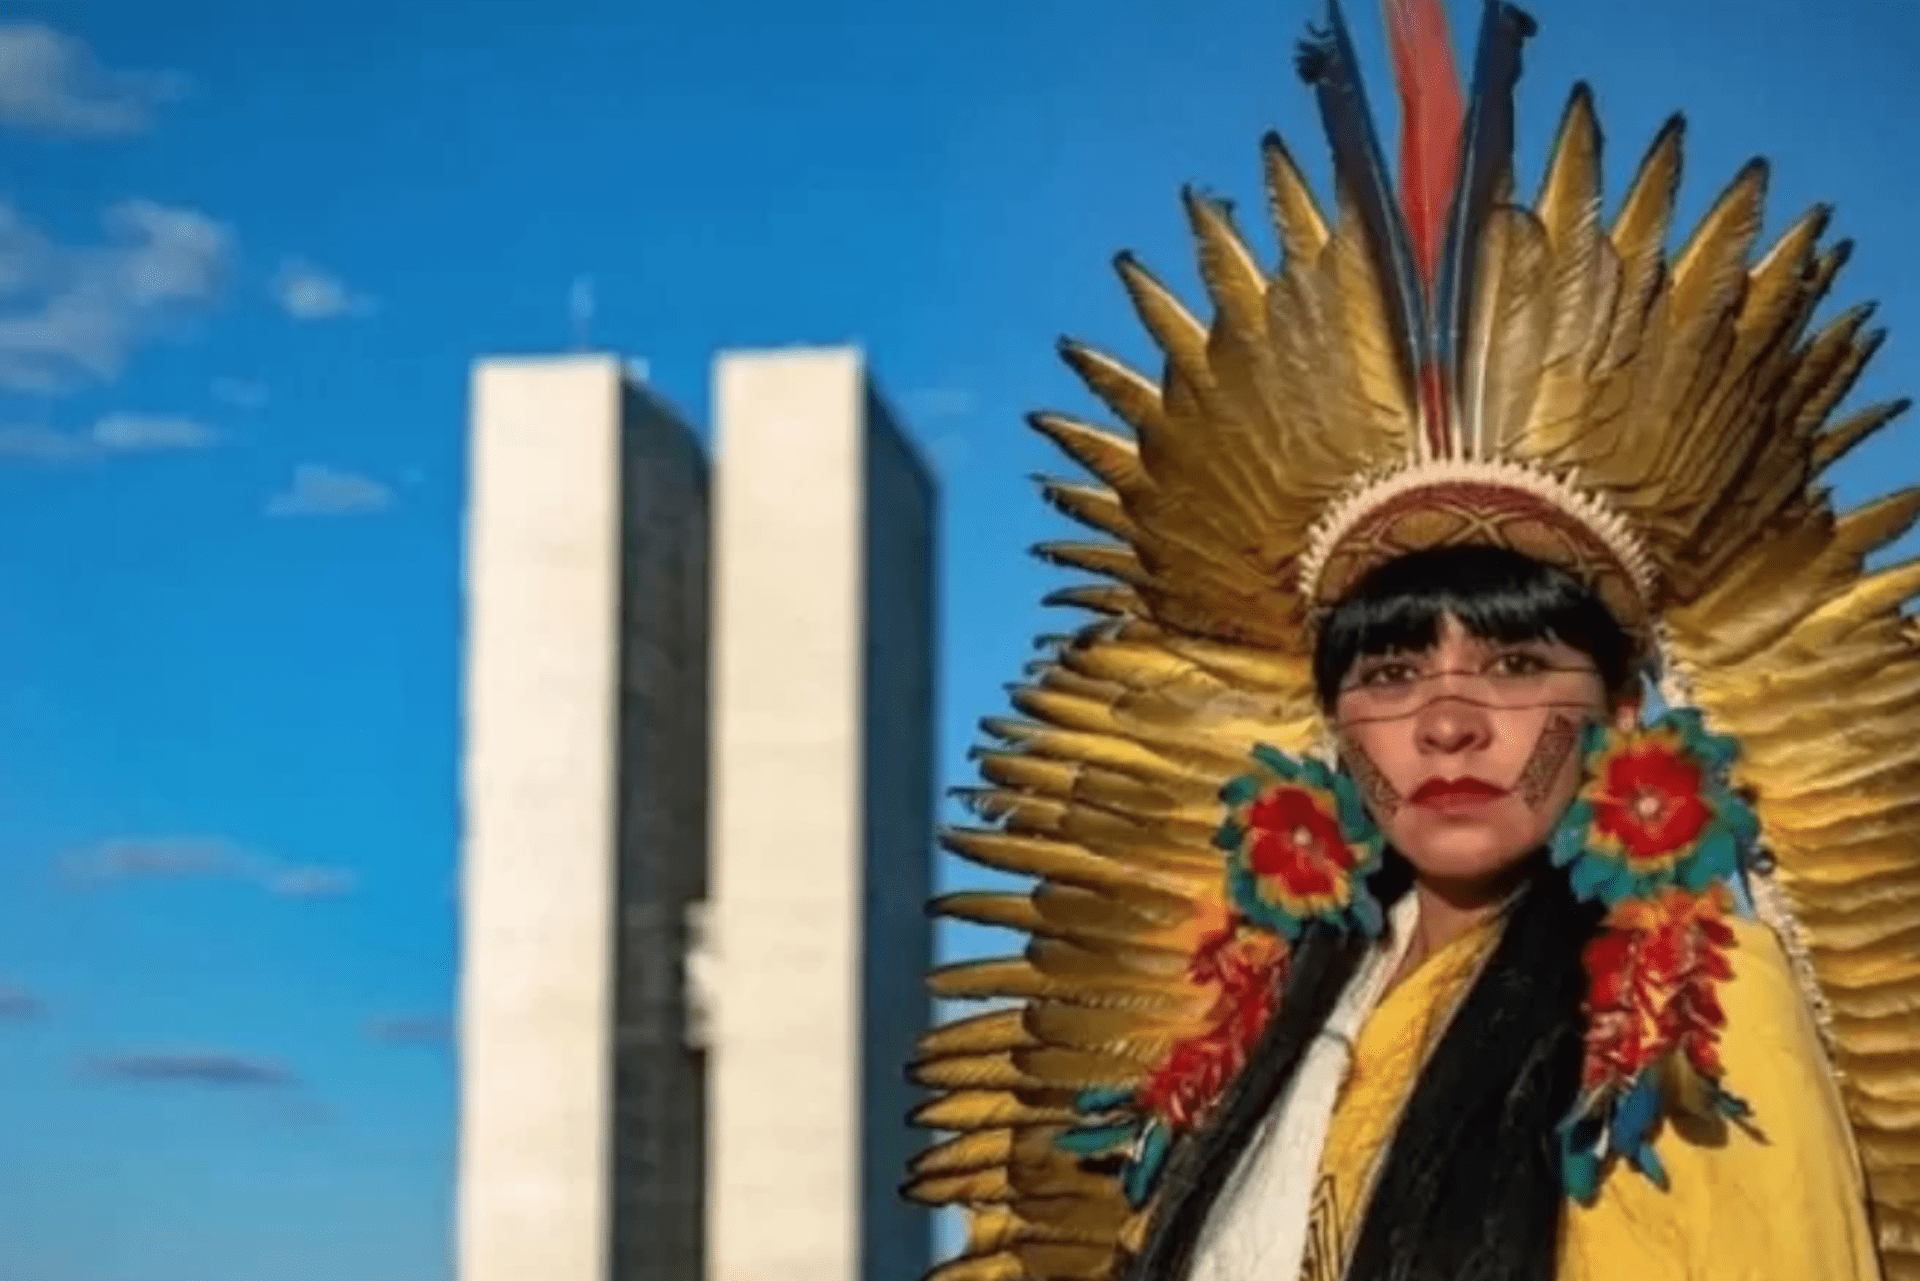 Mulheres indígenas buscam protagonismo nas eleições 2022